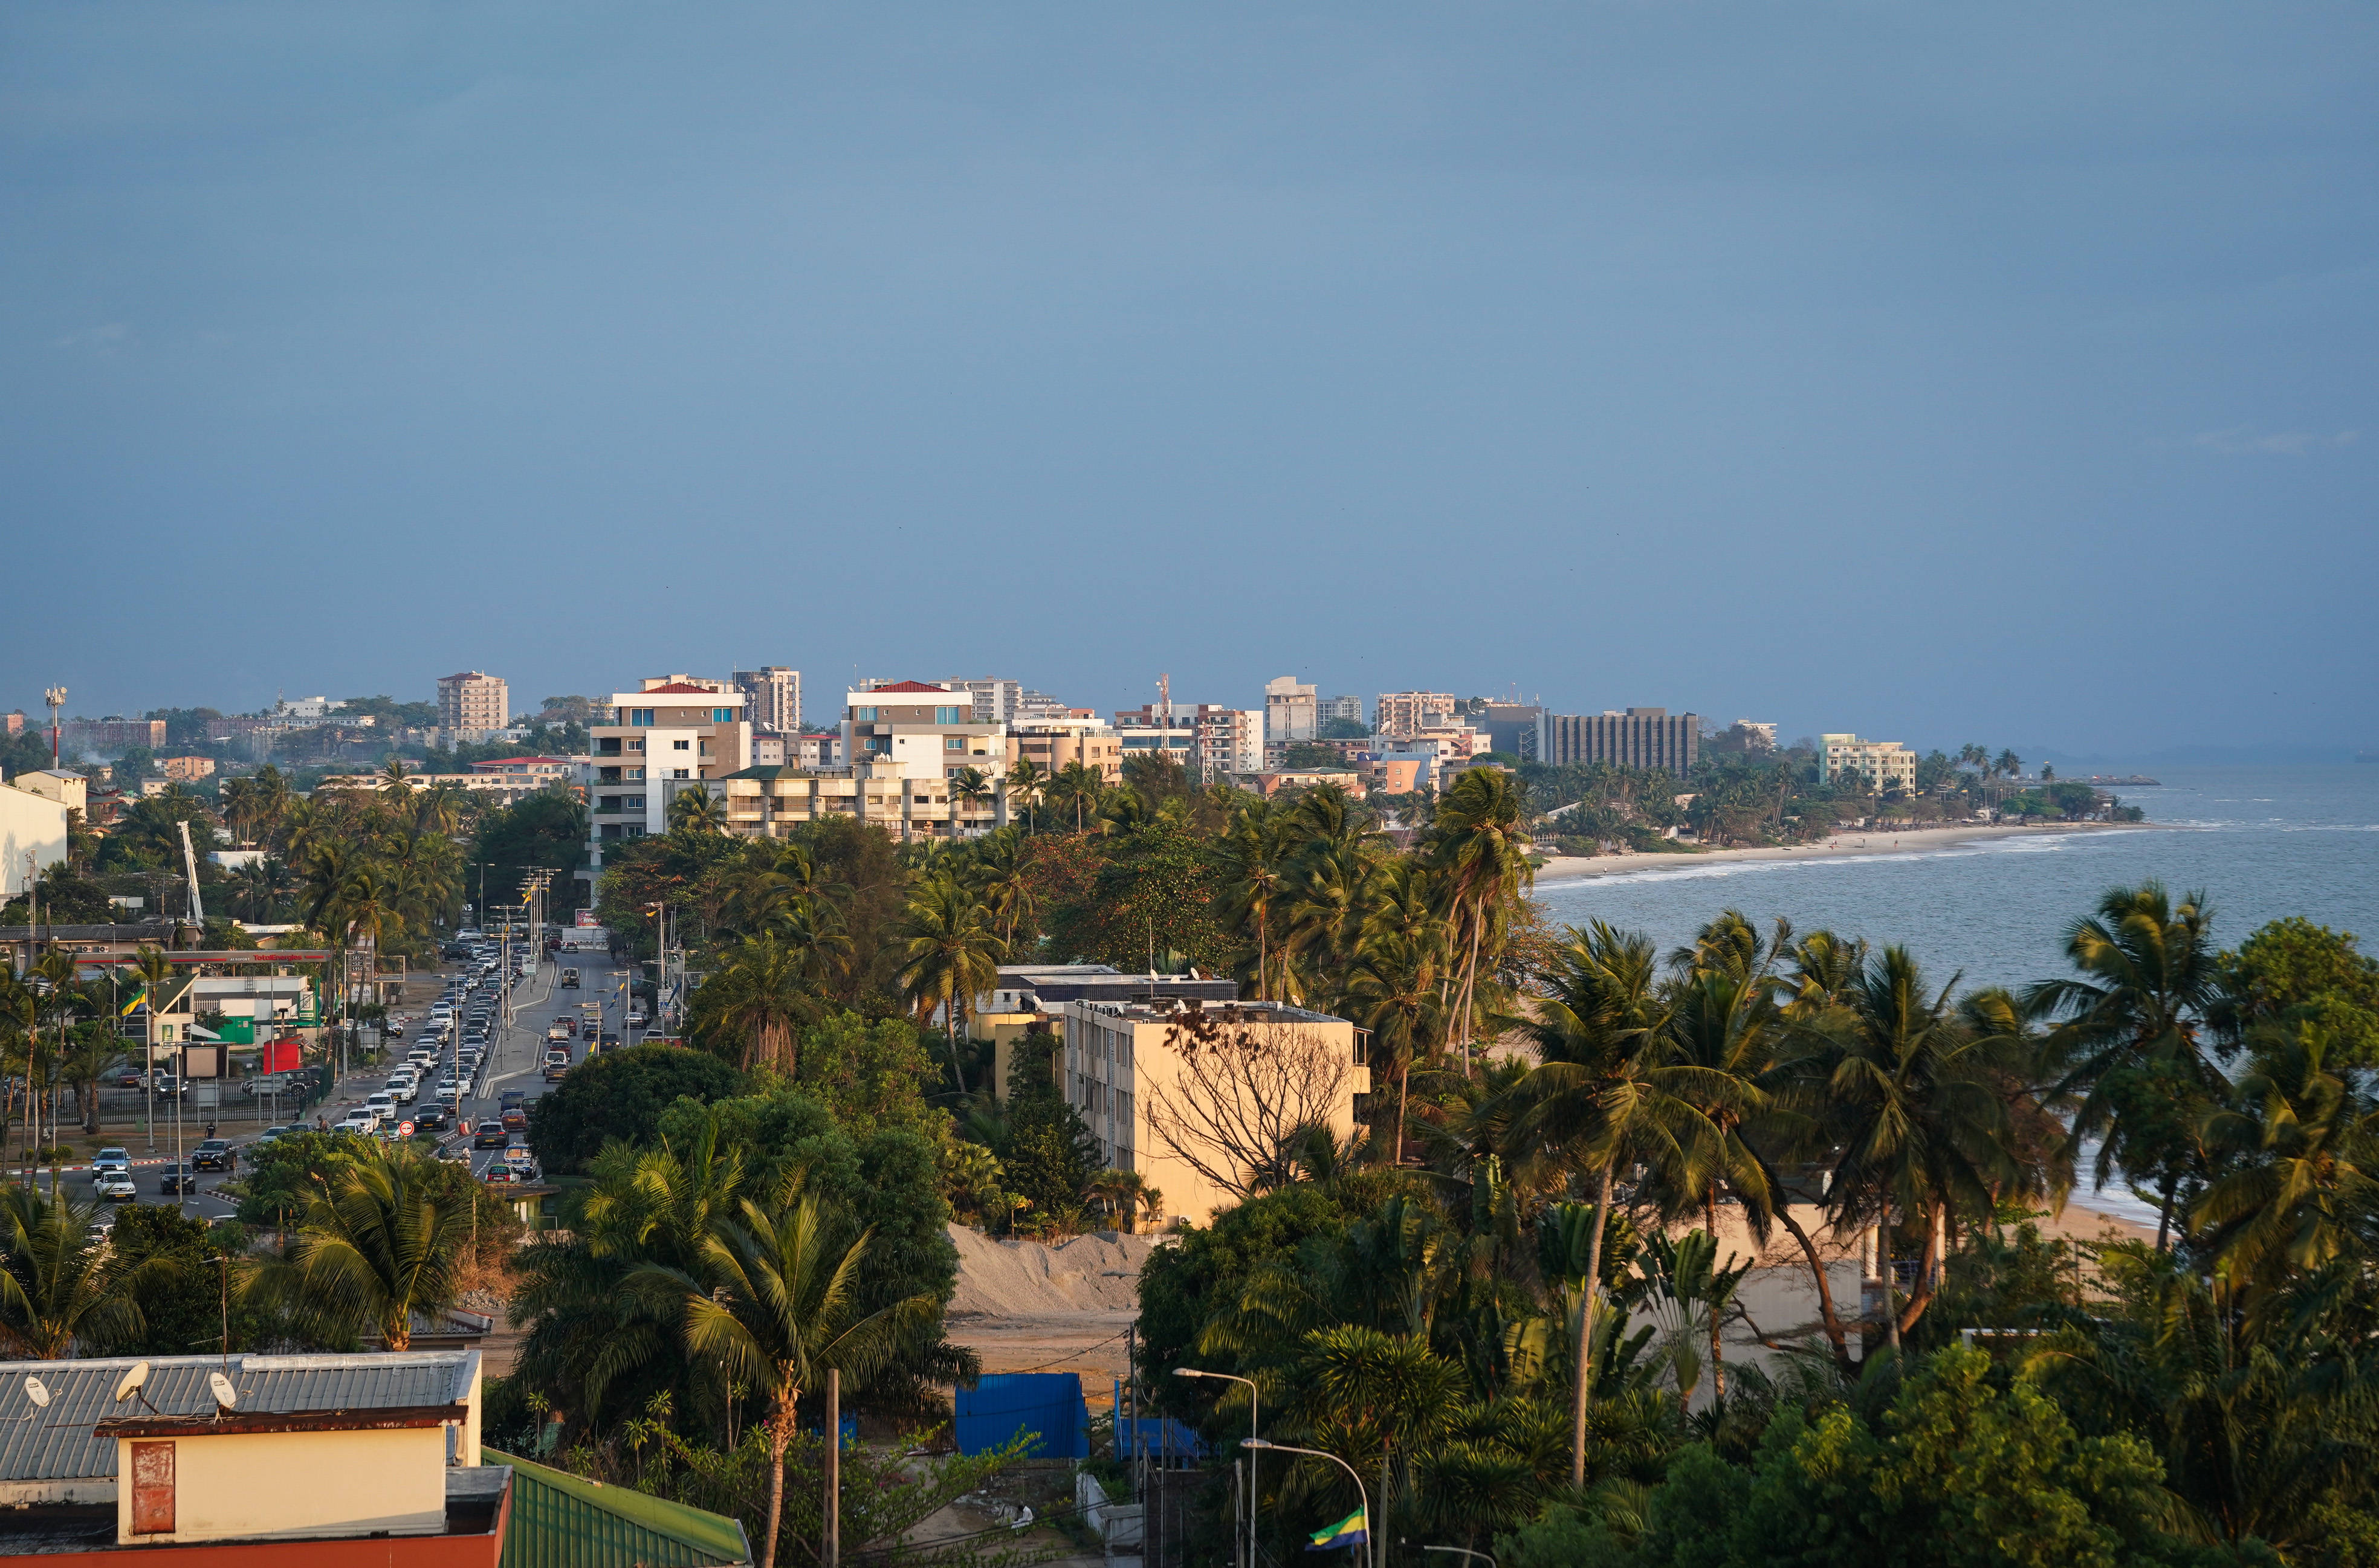 政局动荡后,加蓬首都渐复往日平静